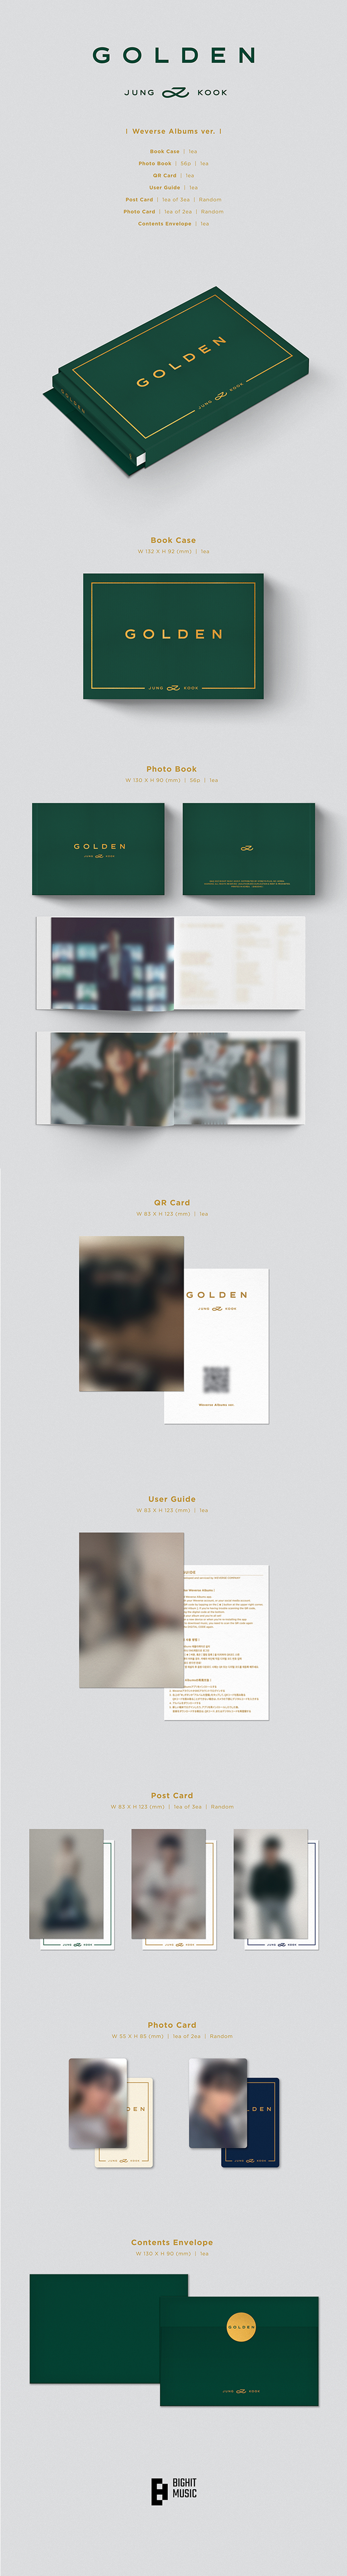 [PRE-ORDER] JUNGKOOK (BTS) - GOLDEN (Weverse Albums ver.)